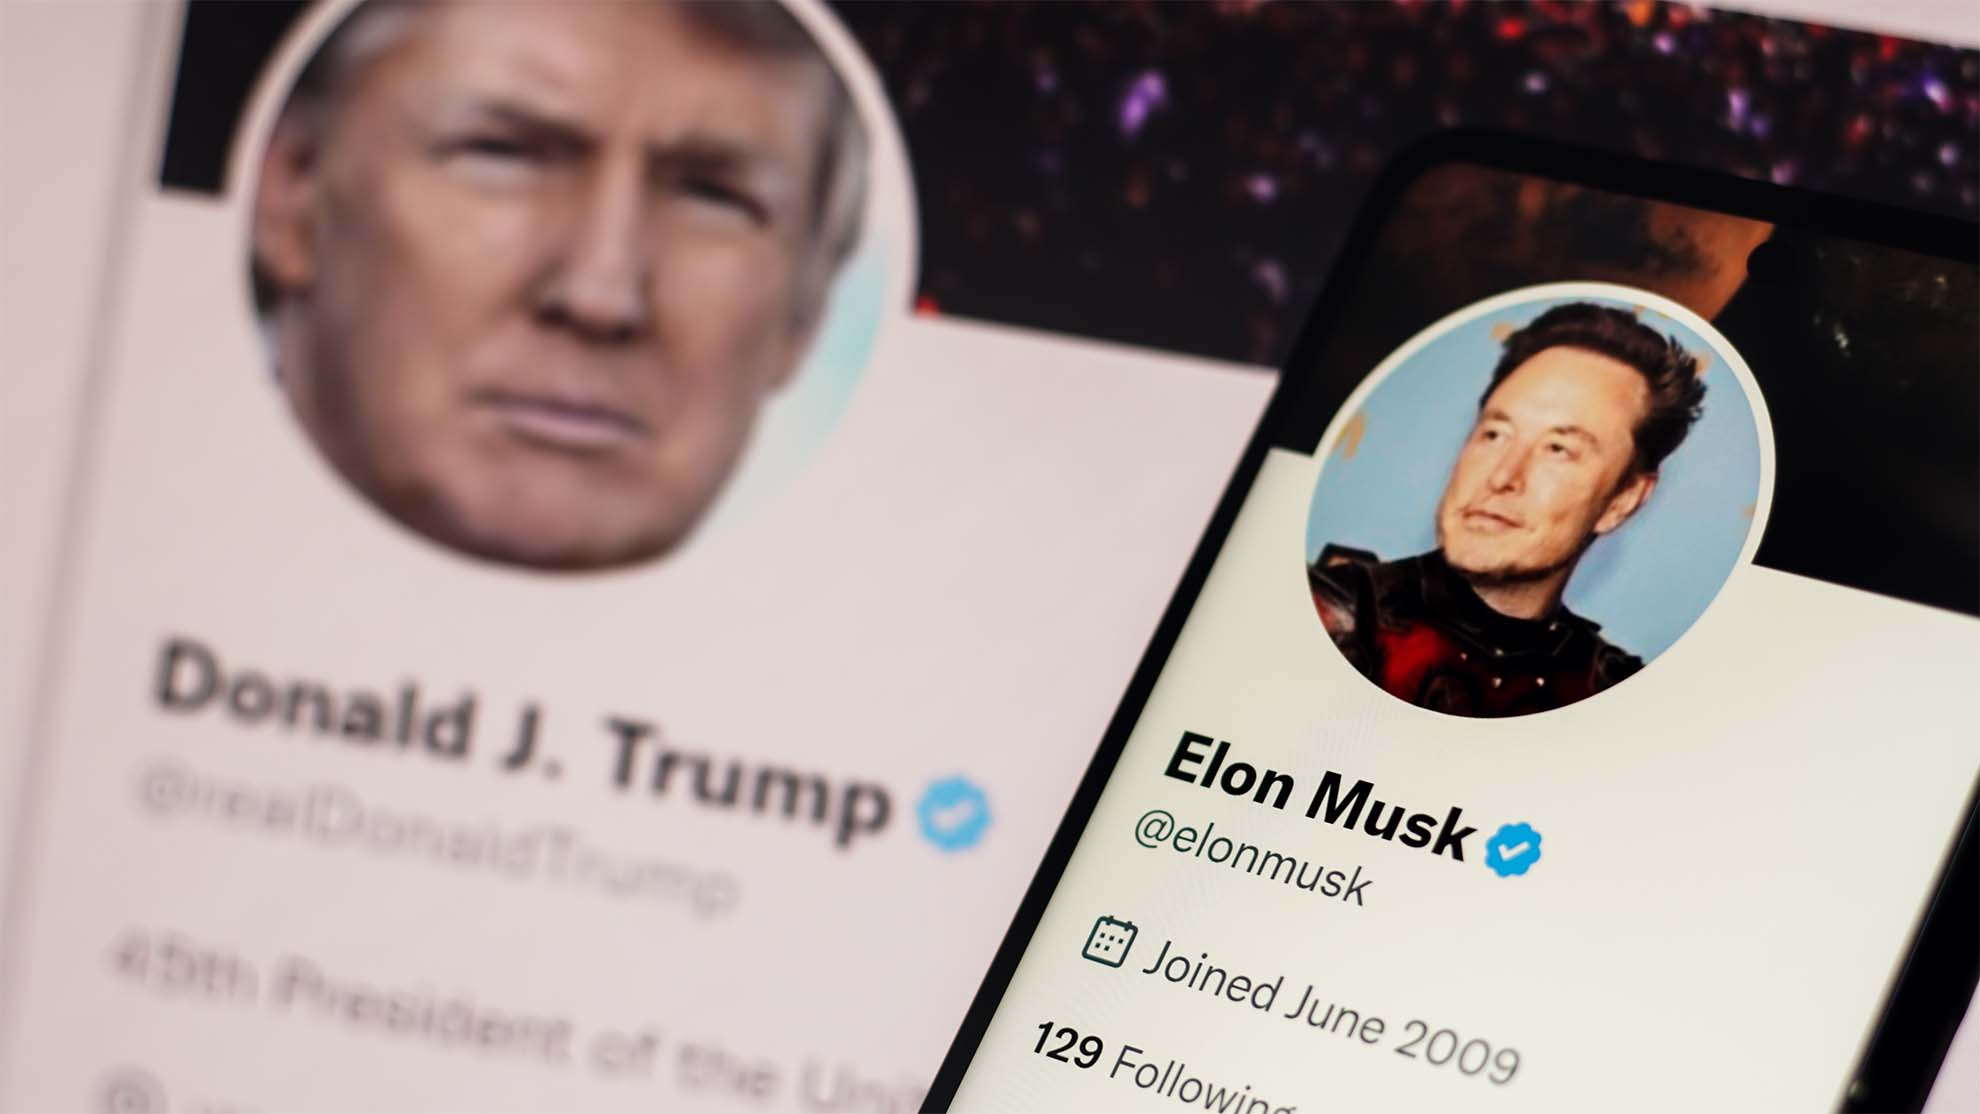 2023年6月20日、ブラジル。この写真のイラストでは、Donald TrumpのTwitterアカウントがノートパソコンの画面に表示され、Elon MuskのTwitterアカウントがスマートフォンの画面に表示されています